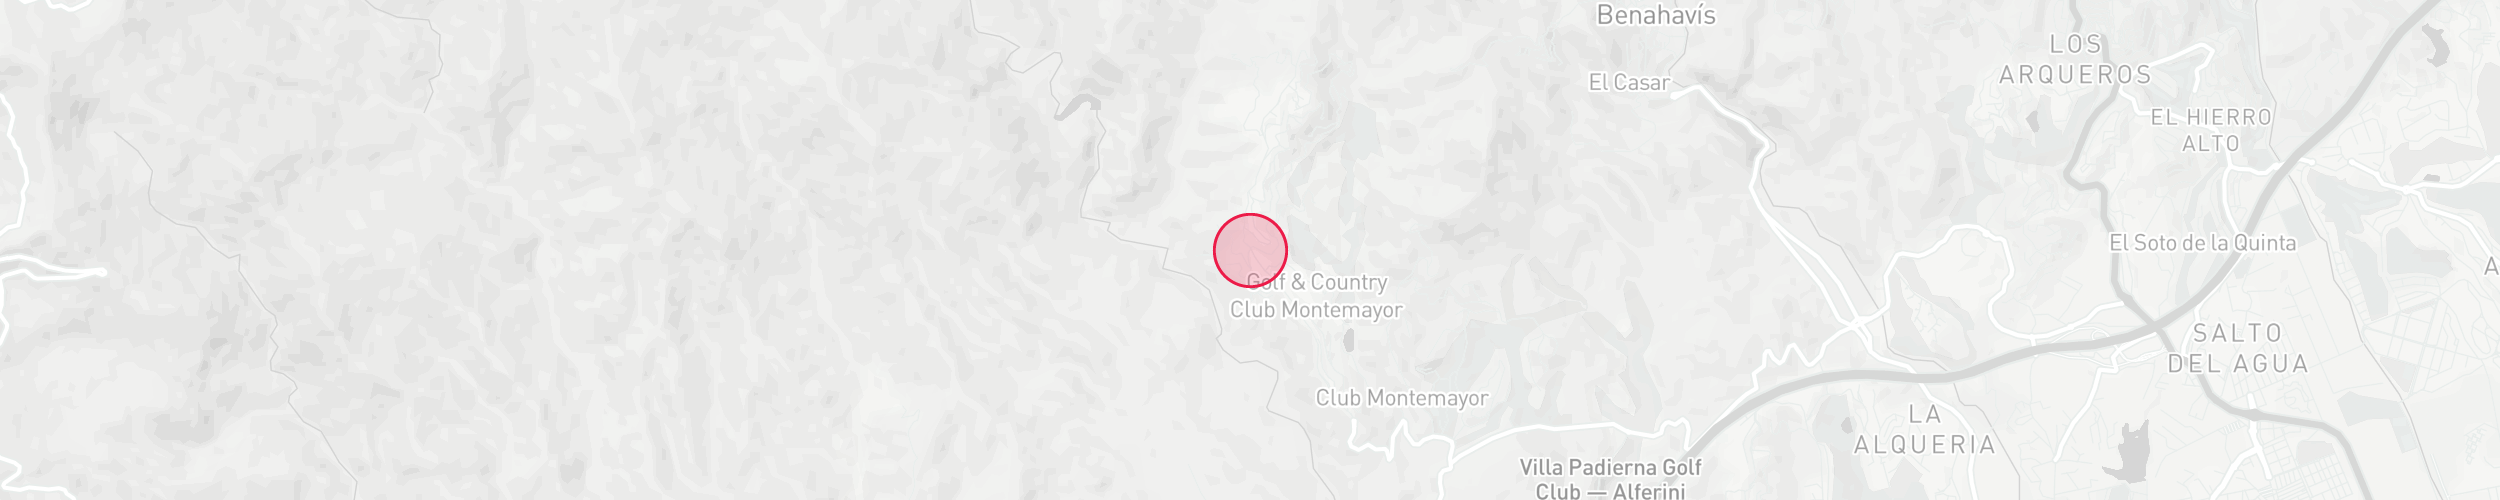 Карта расположения объекта - Monte Mayor